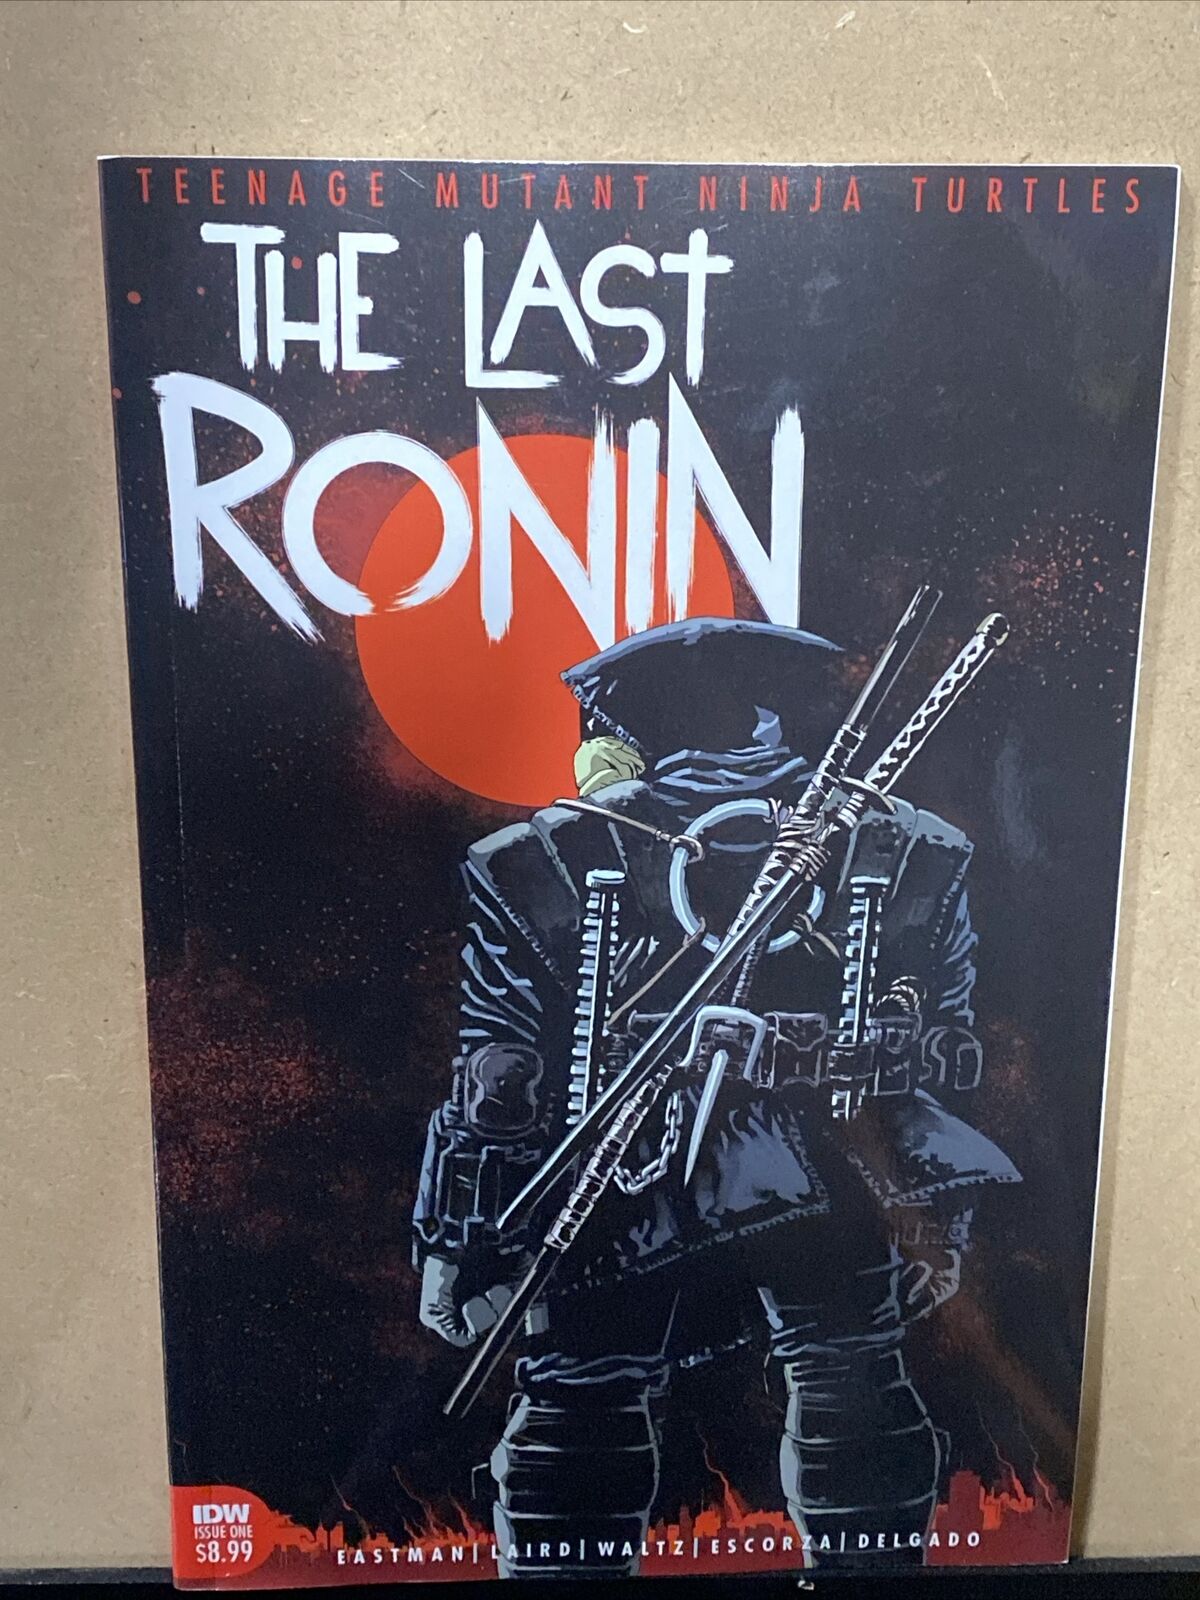 The Last Ronin #1 1st Print NM - Teenage Mutant Ninja Turtles